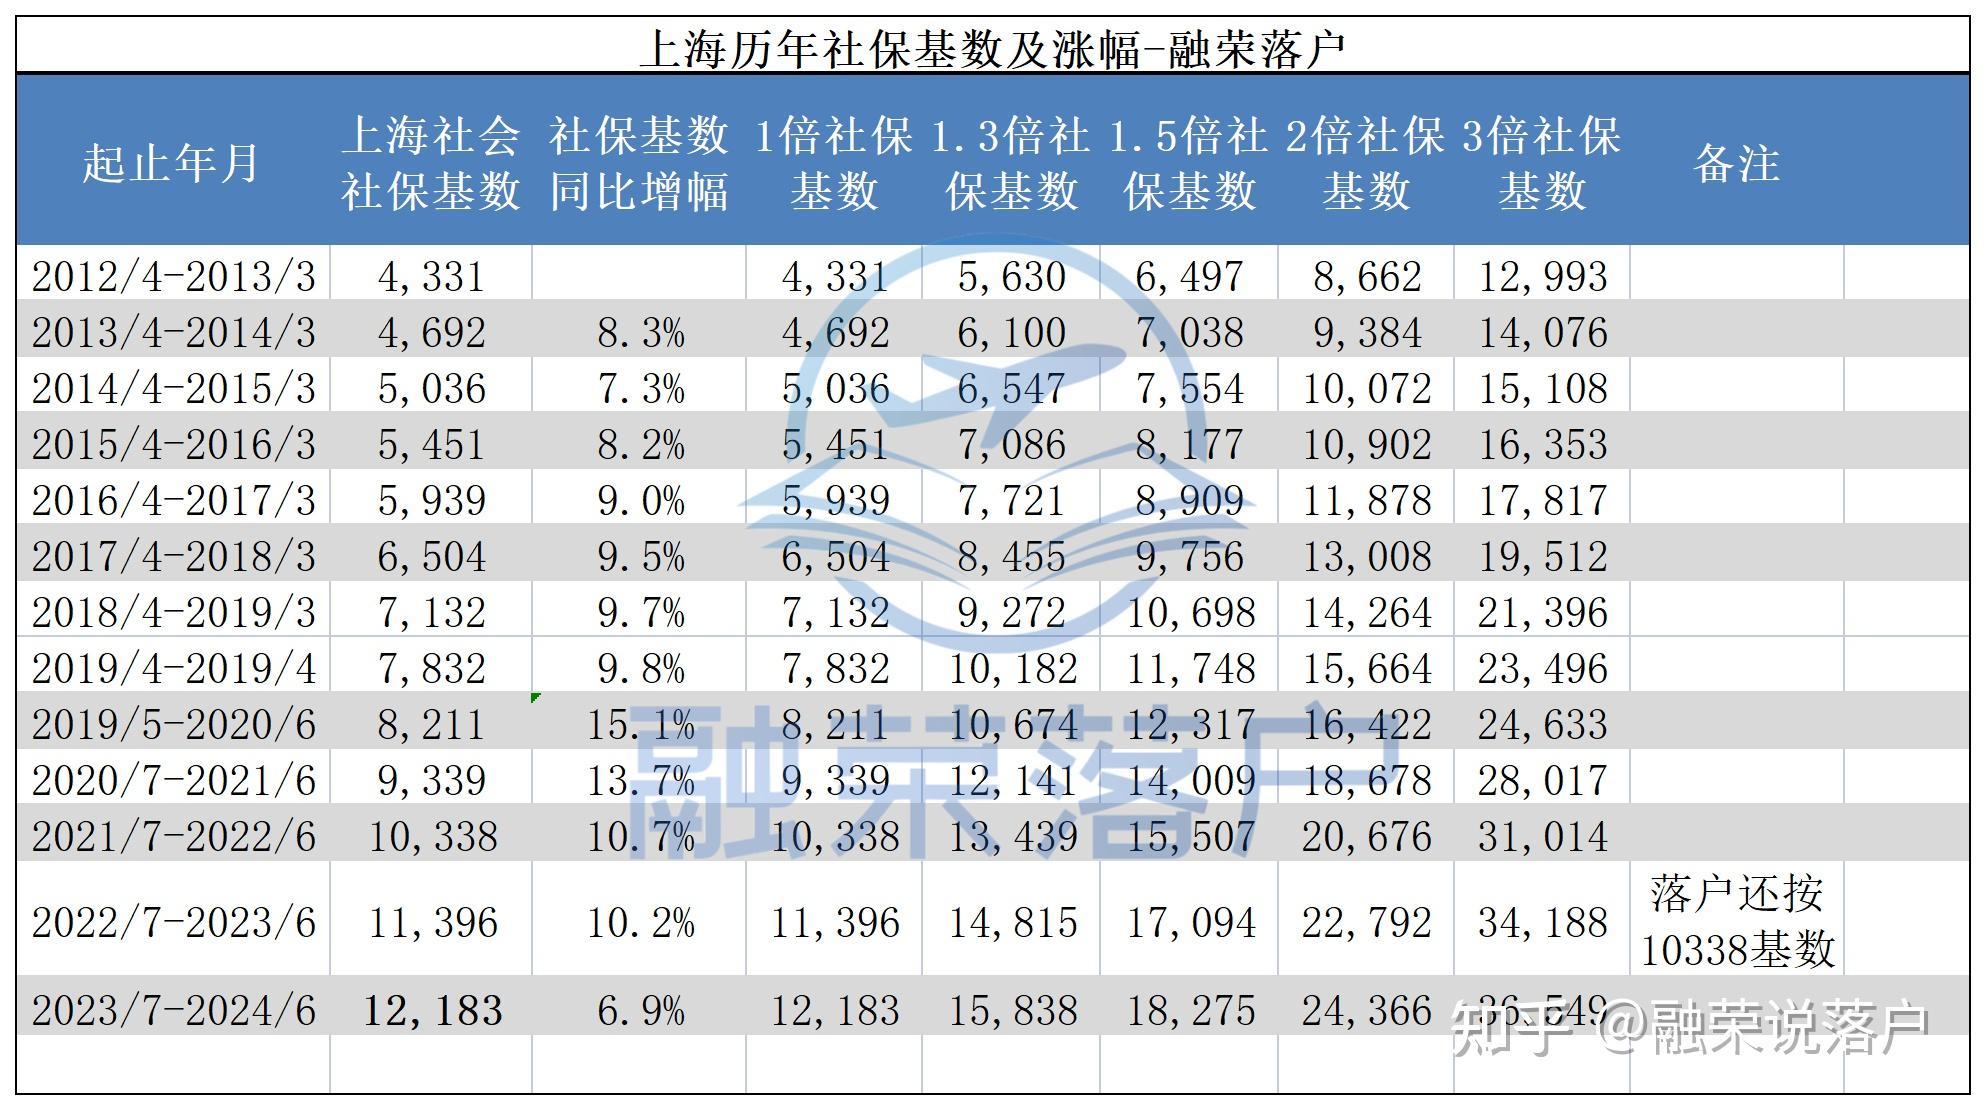 2023年上海社保缴费基数自7月1日,上下限调整,这其中的意义和价值是